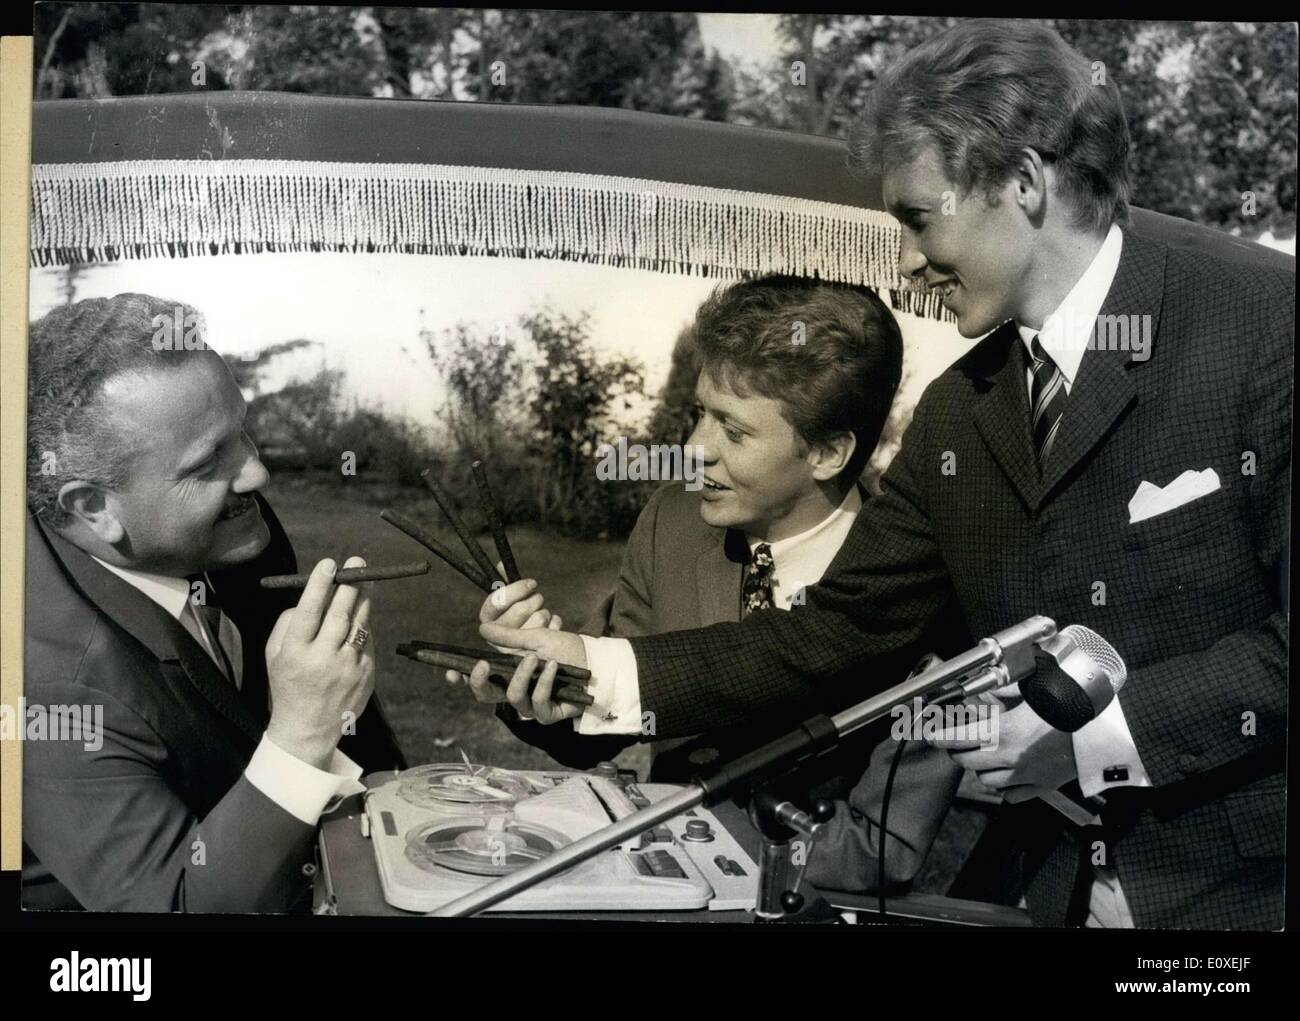 26 mai 1966 - Le chef de la famille Spier musicale reçoit une allusion humoristique à la carrière de ses deux fils sous la forme de deux cigares du leader concert Willy Berking. Banque D'Images